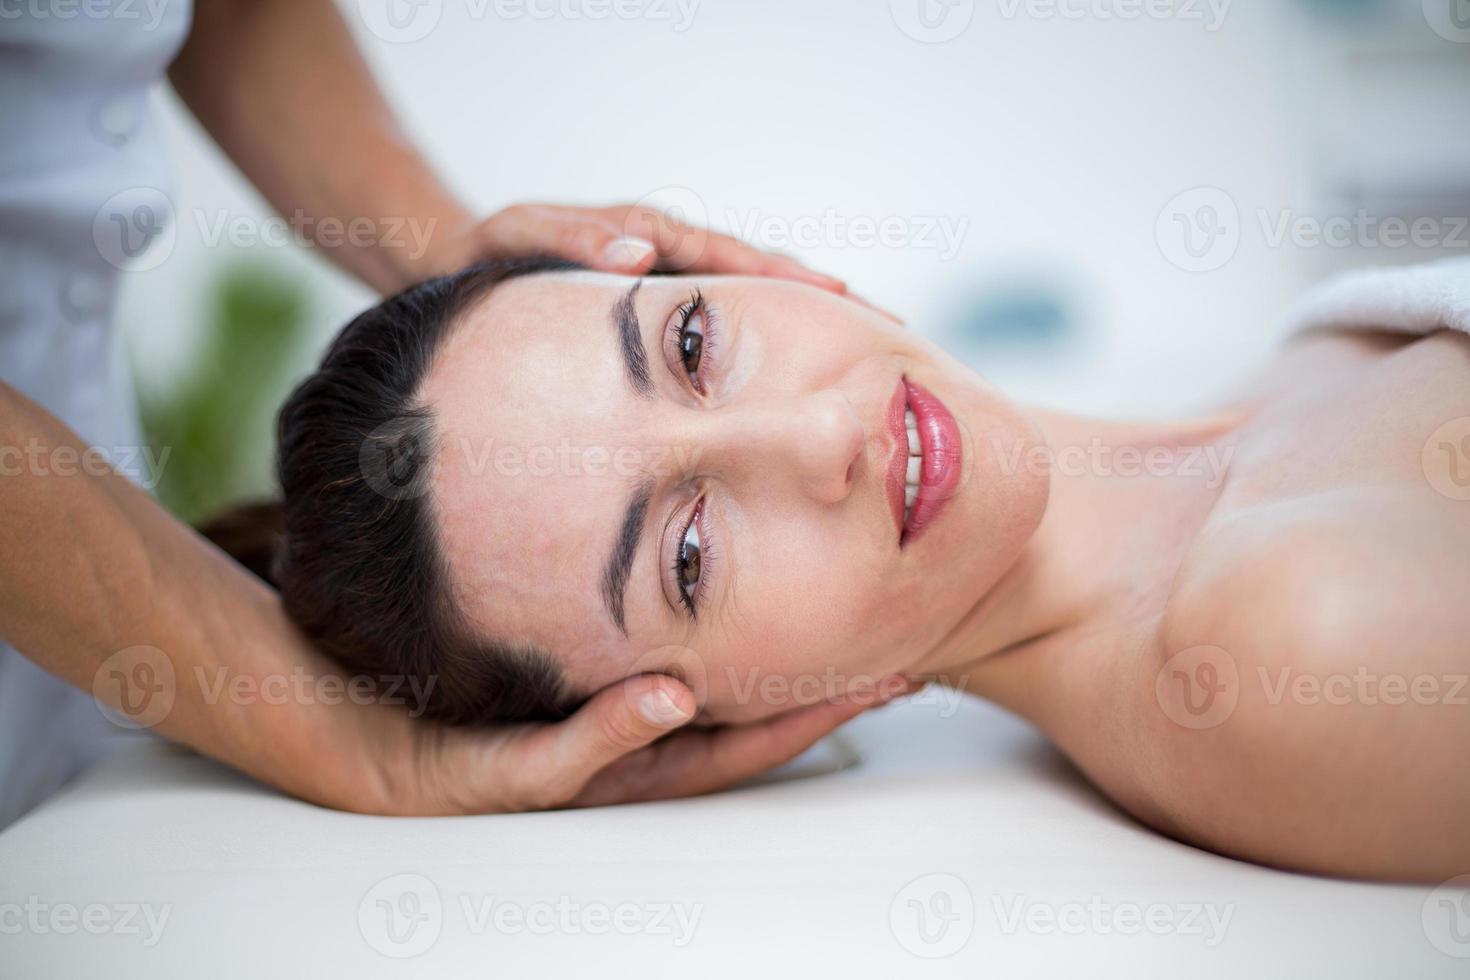 fisioterapeuta haciendo masaje de cuello foto